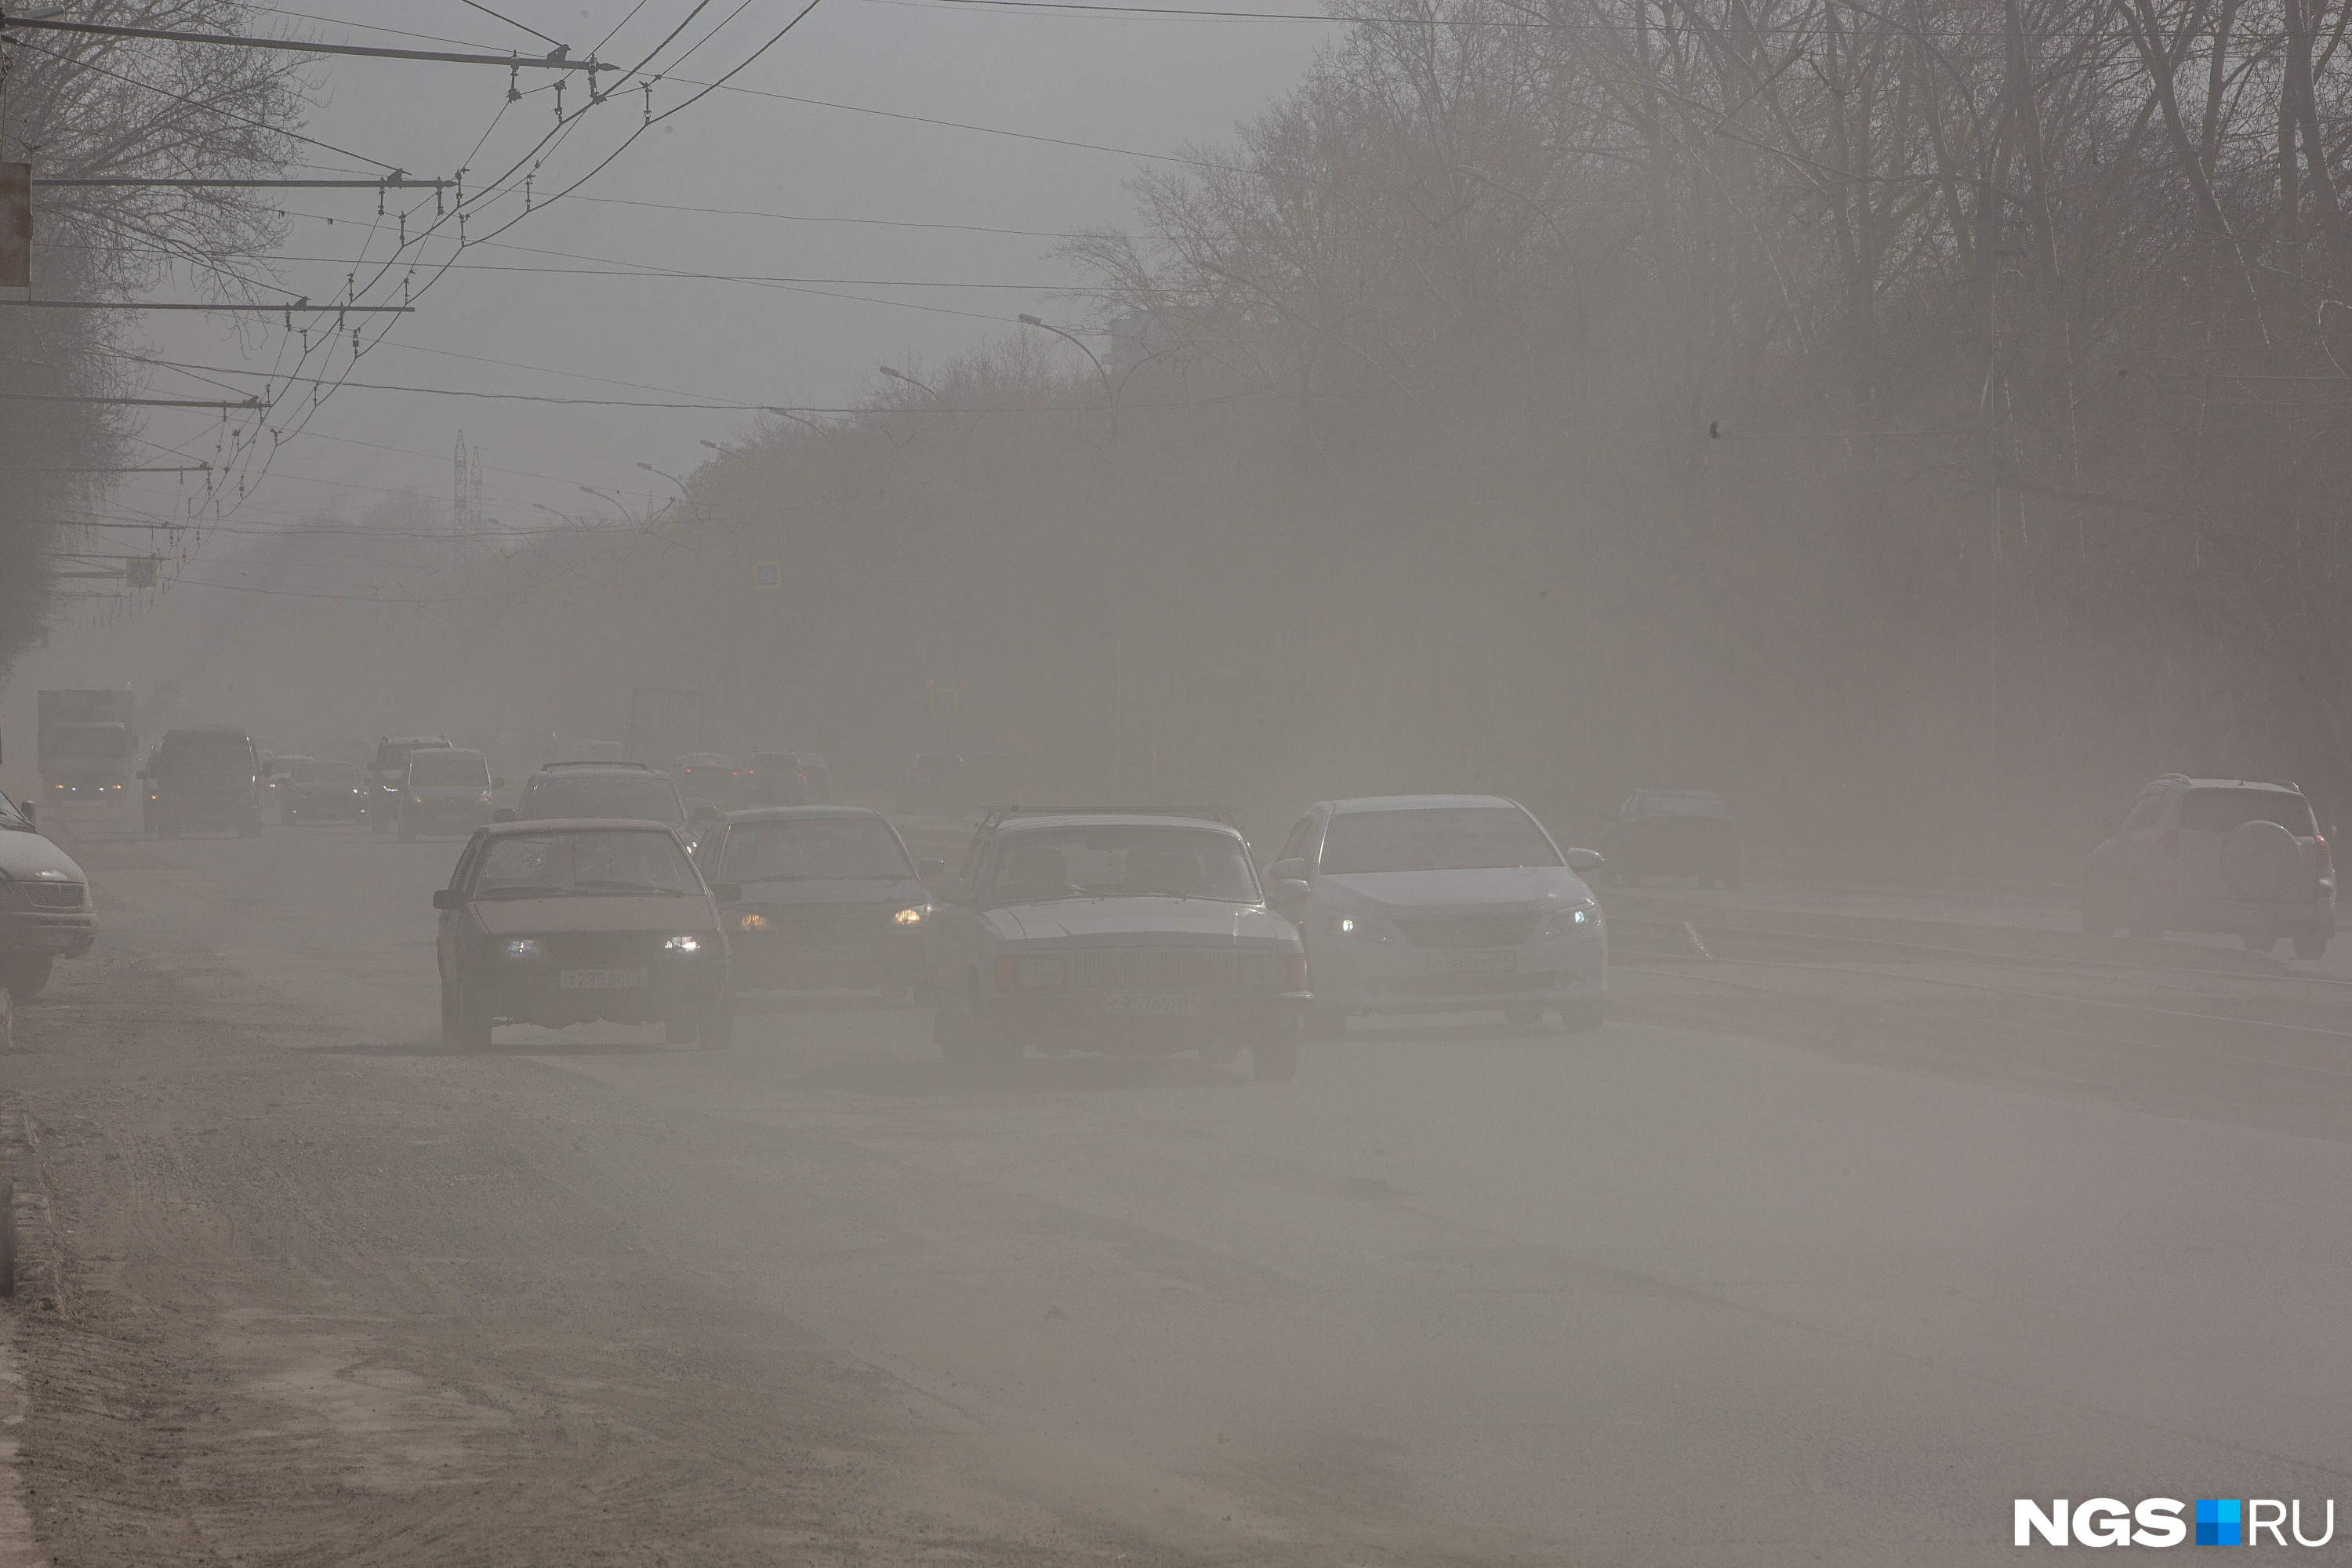 Год за годом мэрия Новосибирска ищет способы уменьшить объемы пыли в городском воздухе, но проигрывает погоде, строителям и нерадивым горожанам — это одни из популярных официальных версий загрязнений